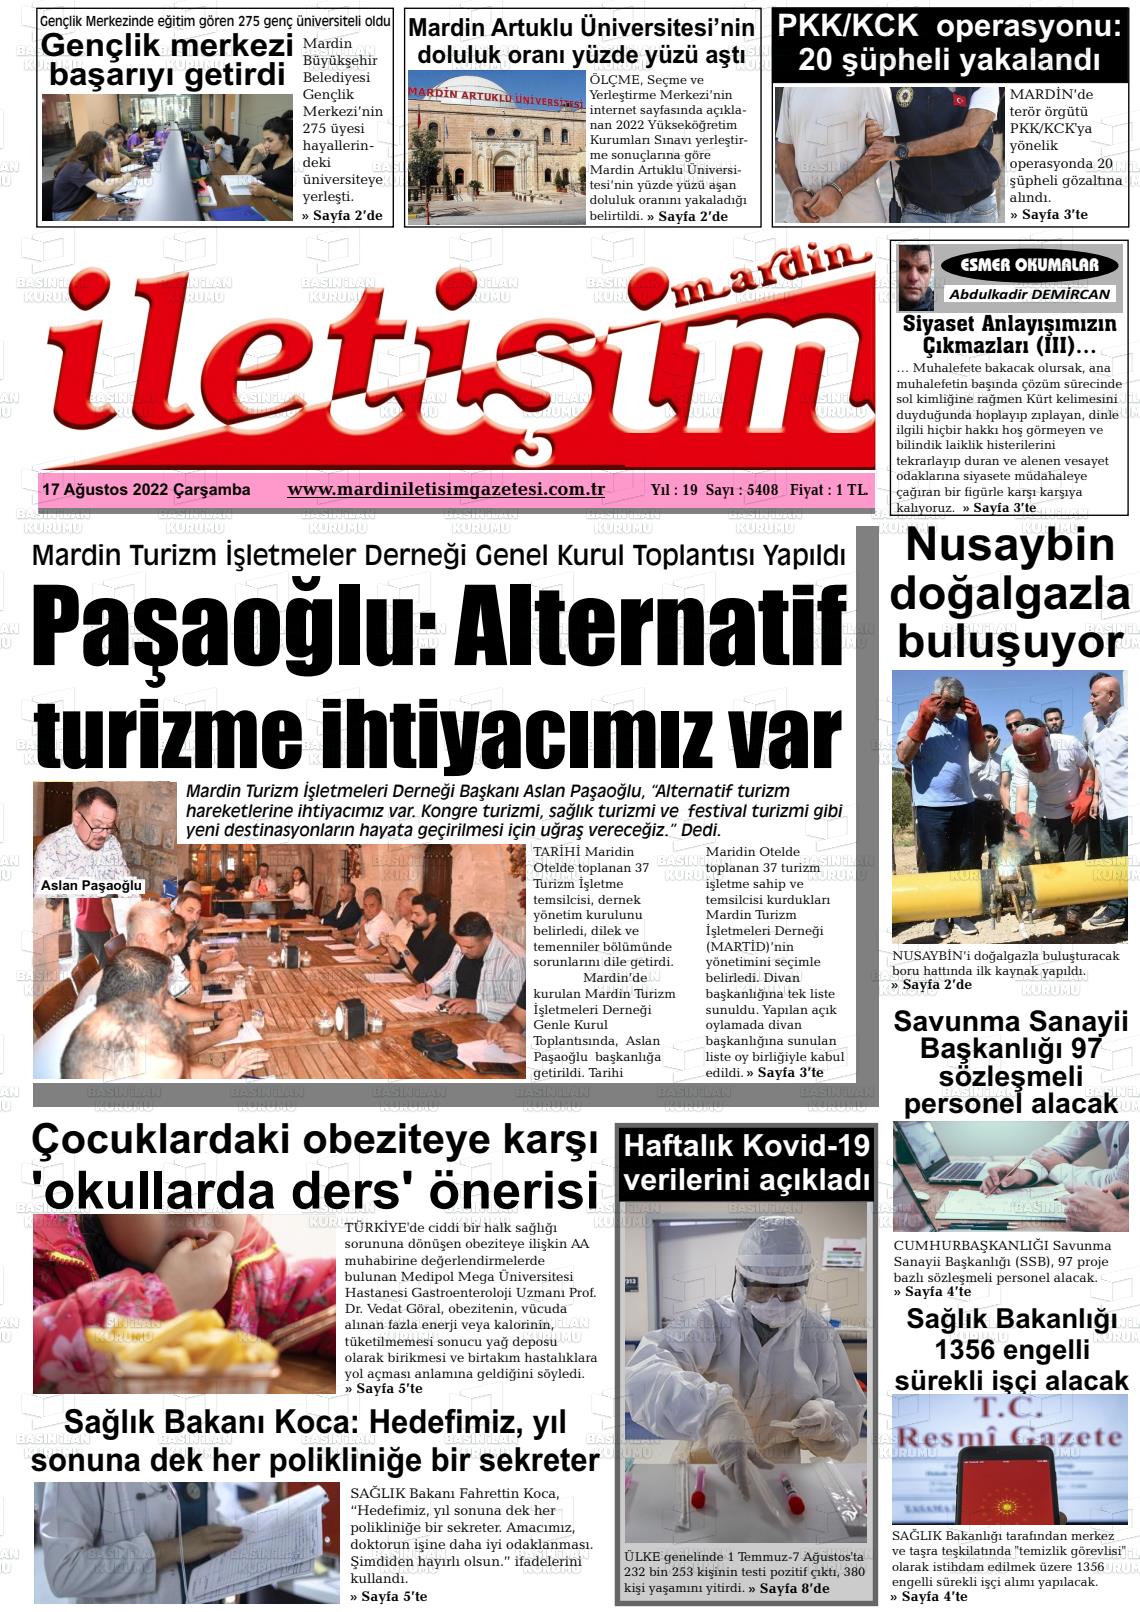 17 Ağustos 2022 Mardin İletişim Gazete Manşeti